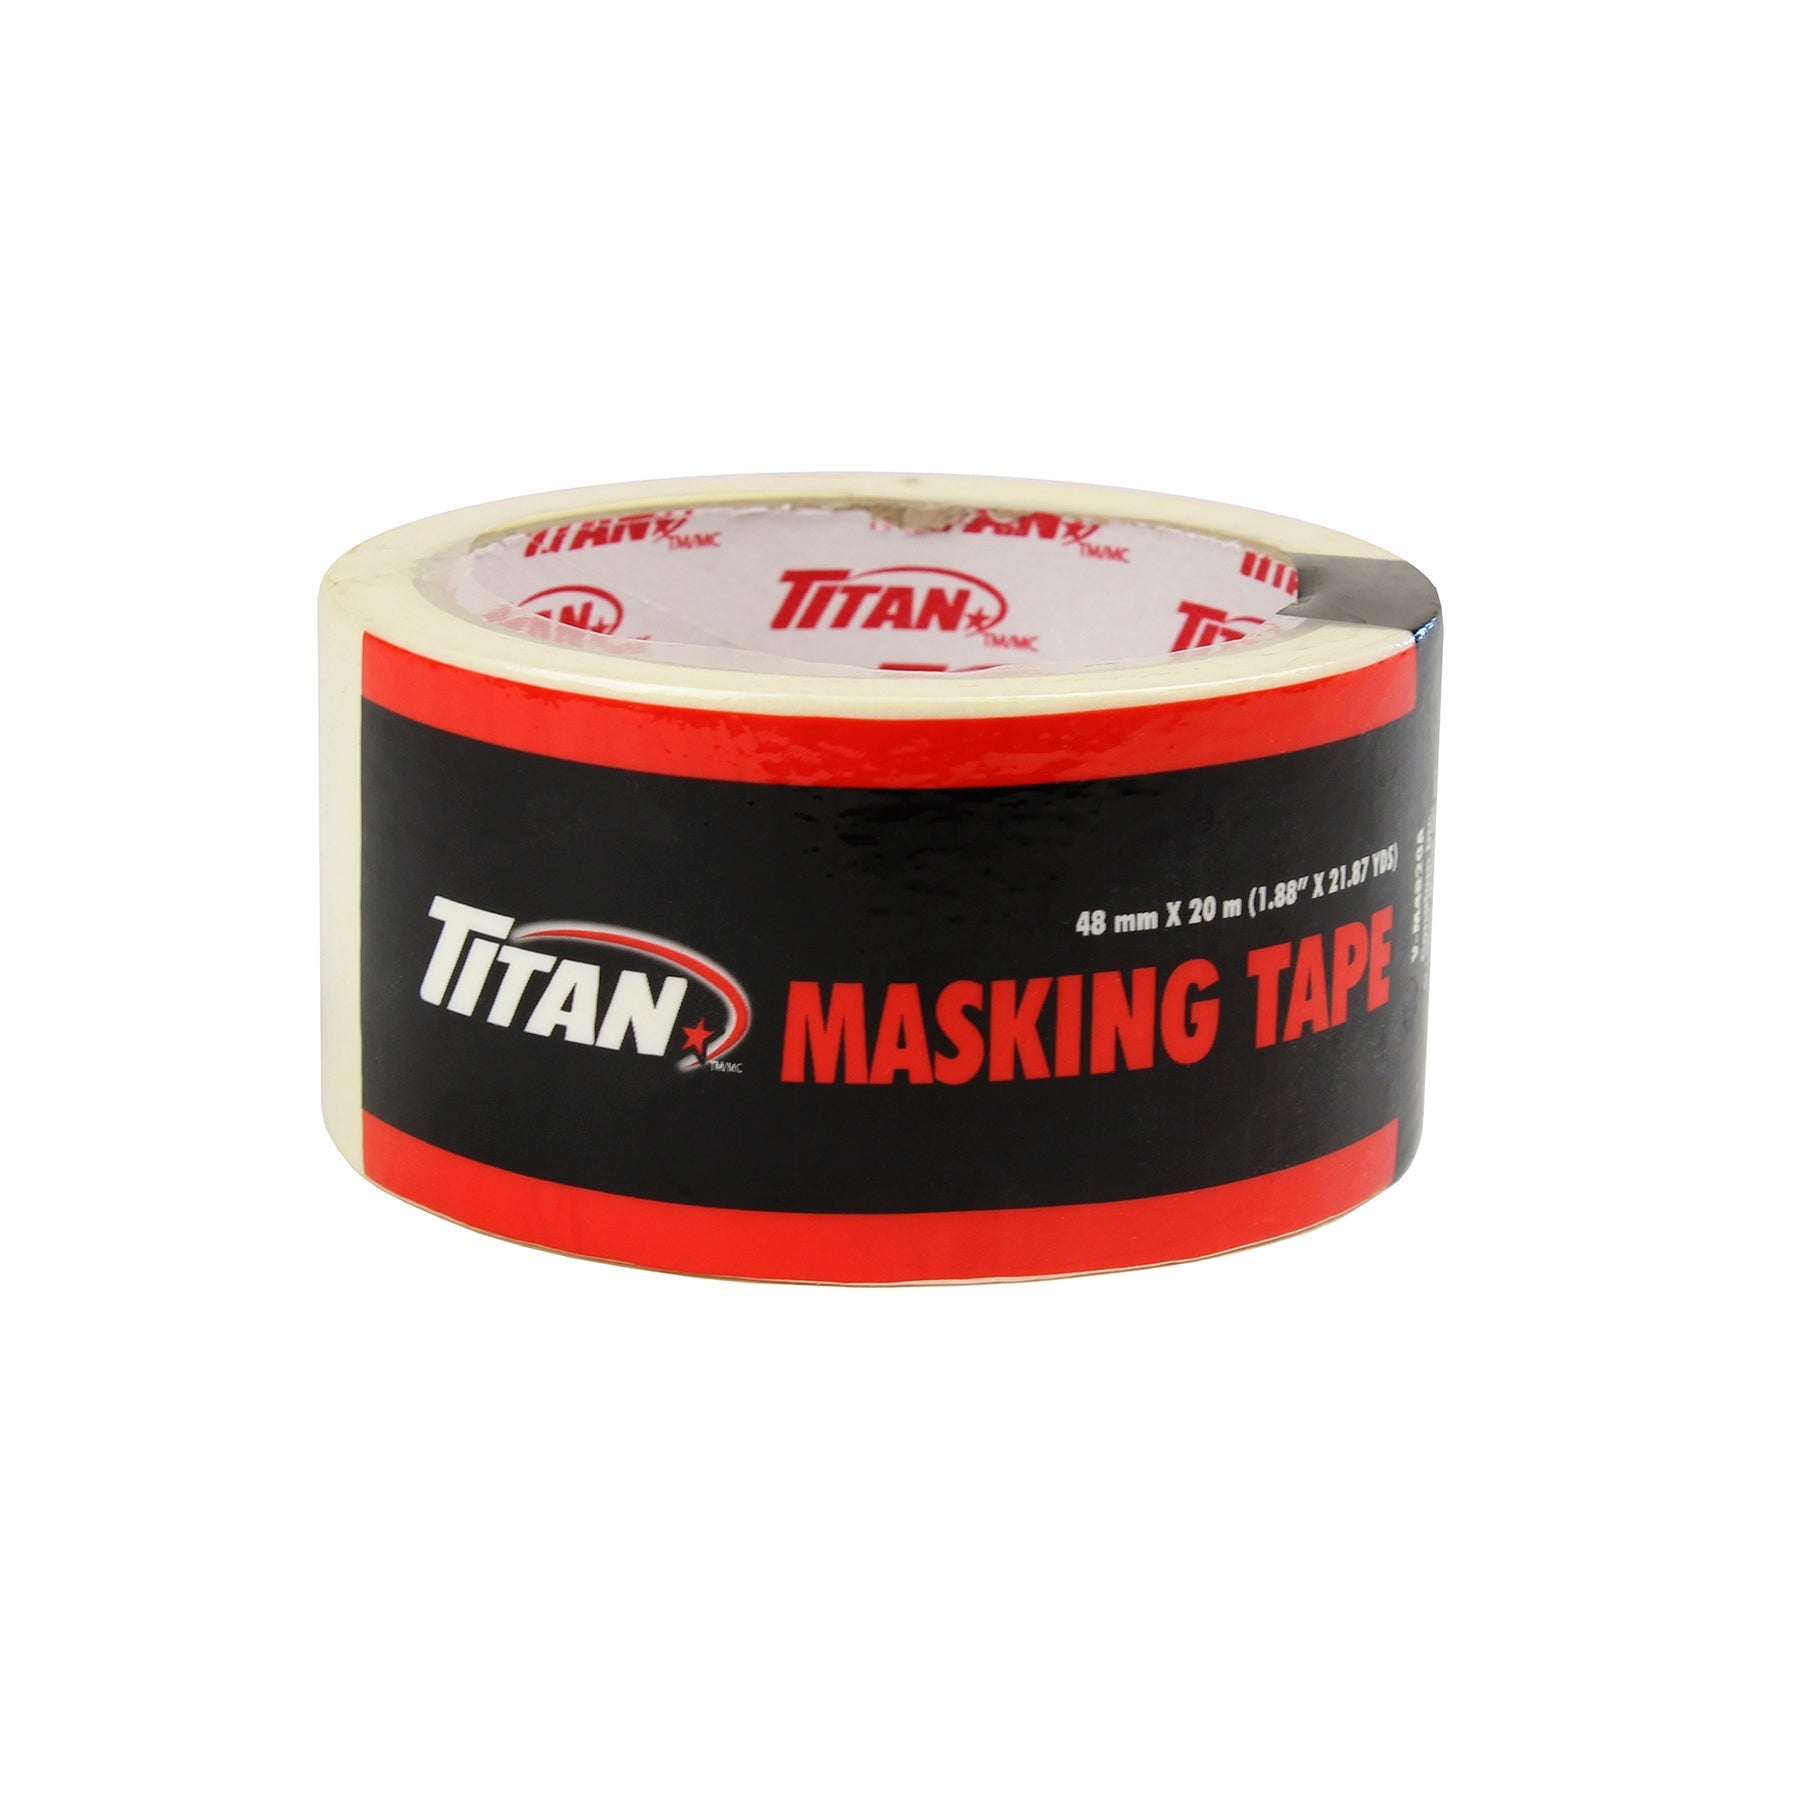 Titan Masking Tape 1.8in x 65.5ft (48mm x 20m) 